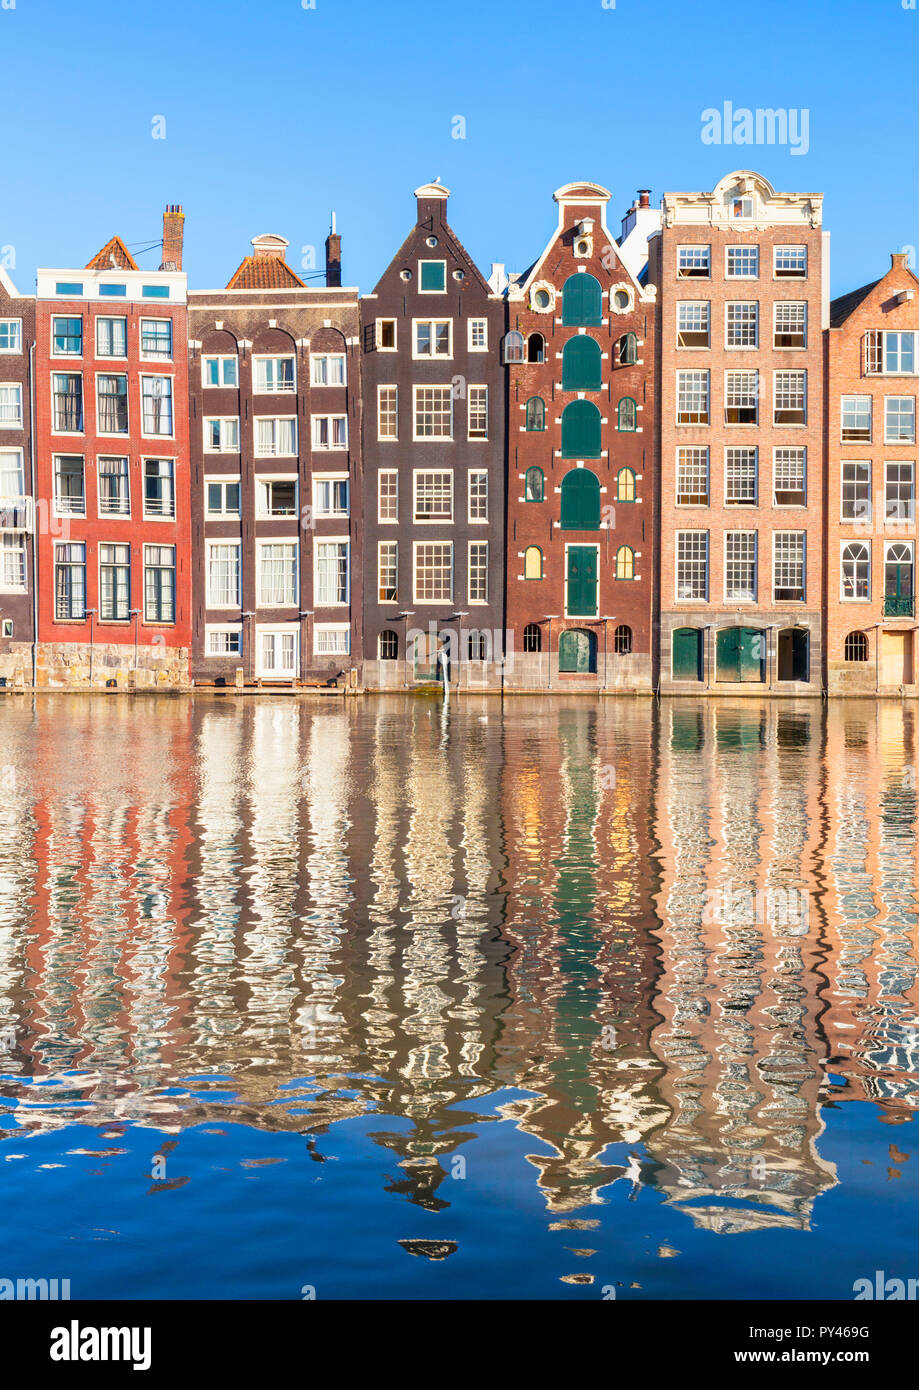 Maisons d'Amsterdam Damrak sur un canal partiellement remplies au dancing maisons avec l'architecture néerlandaise par le canal Amsterdam Hollande Pays-bas eu Europe Banque D'Images